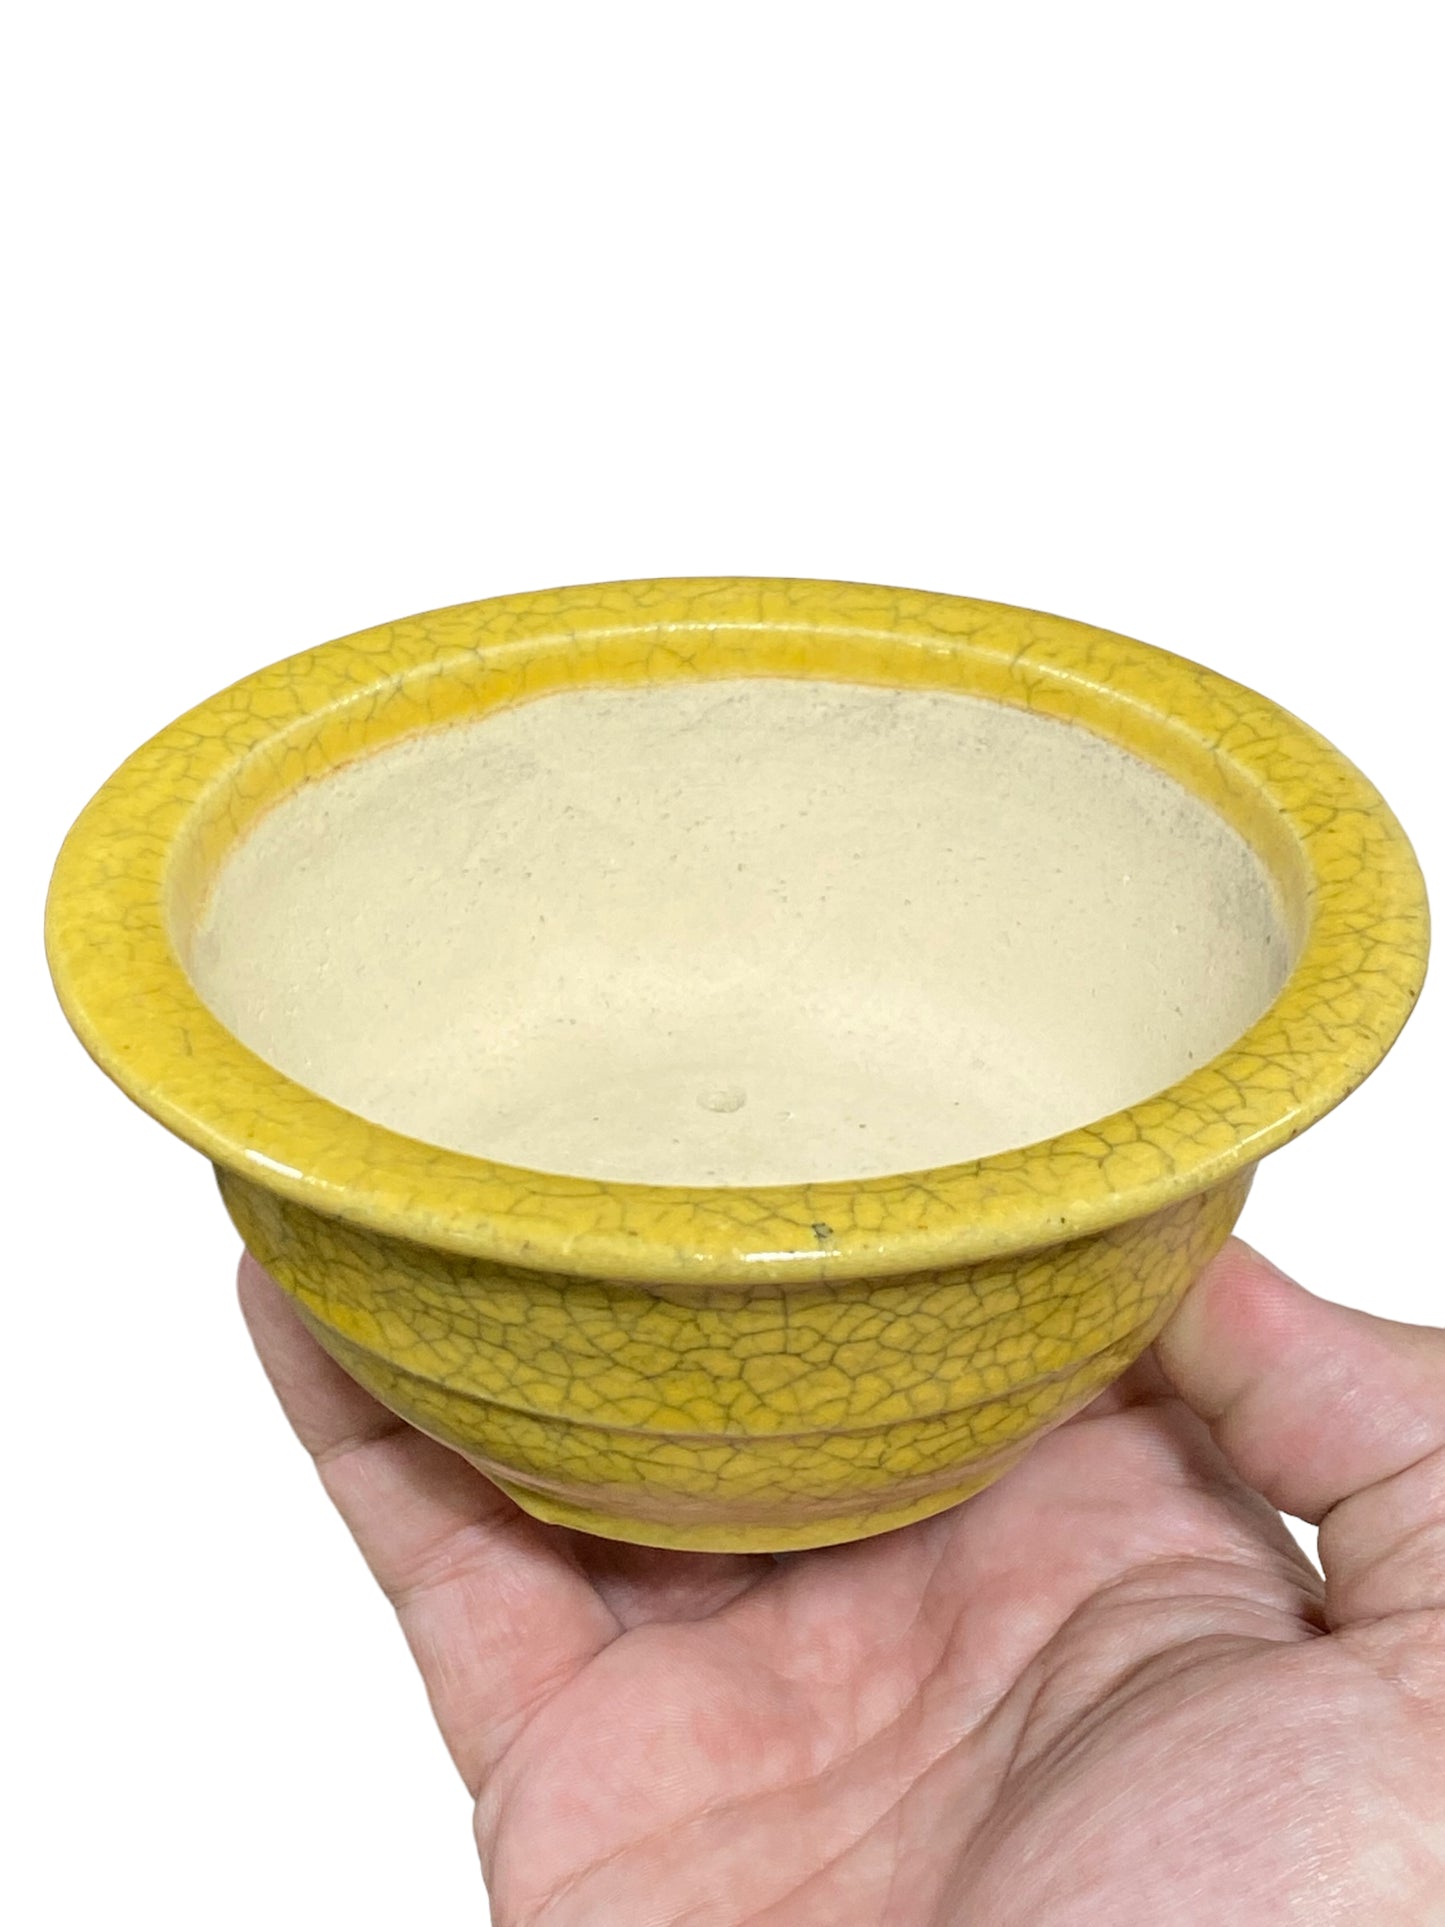 Koyo - Yellow Crackle Glazed Bowl Bonsai Pot